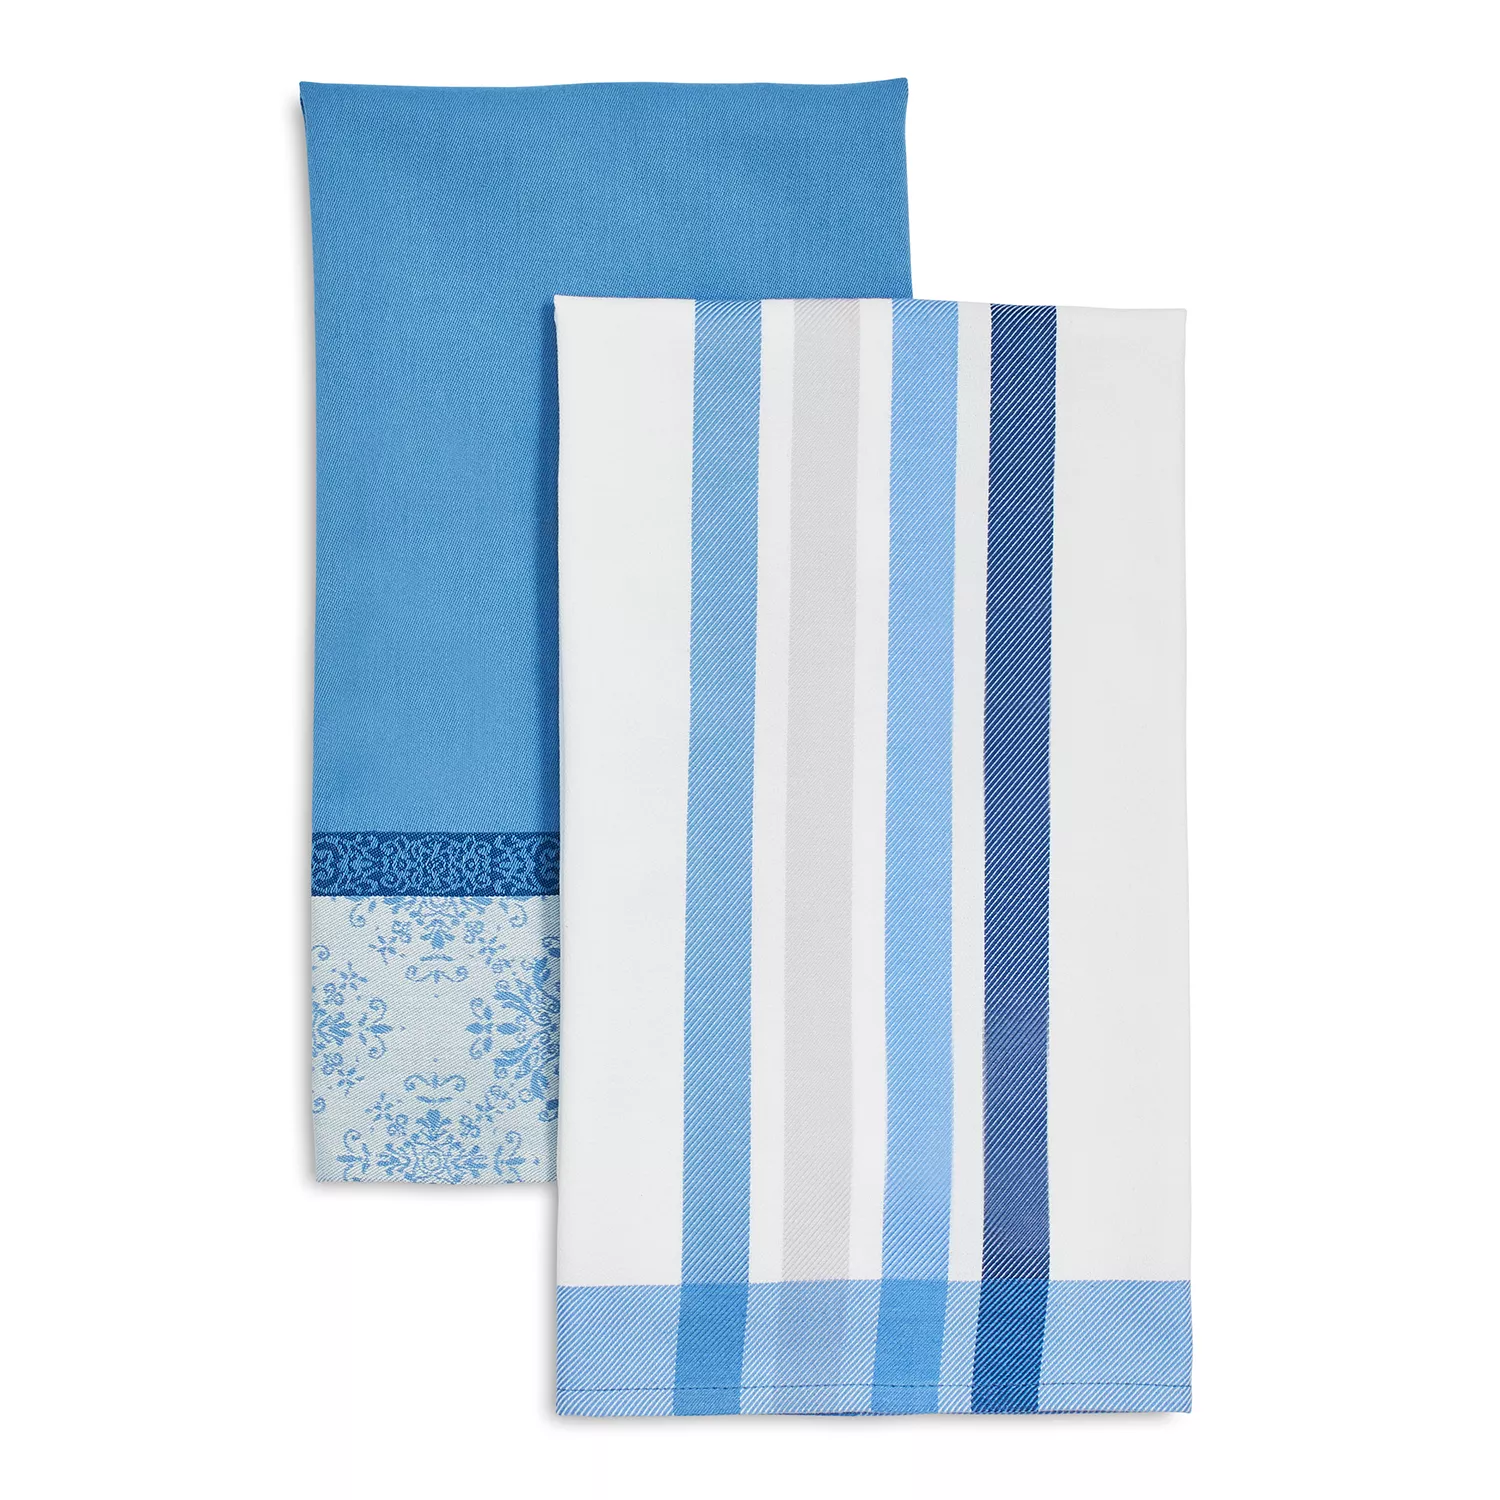 Tile Jacquard Towels, Set of 2